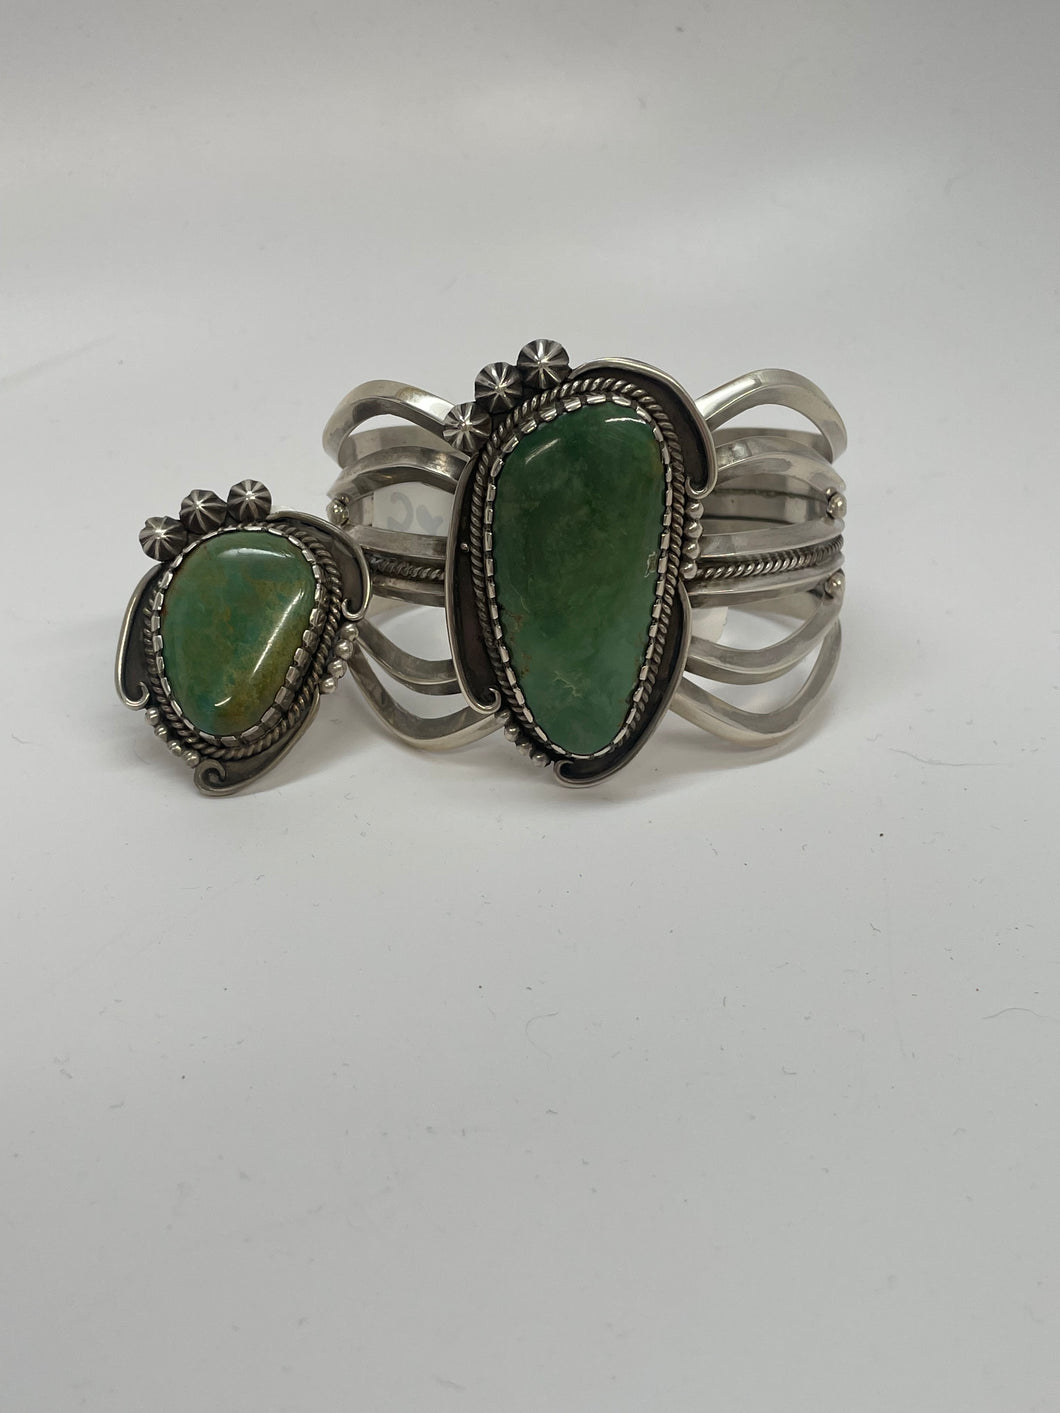 Royston Turquoise Ring and Bracelet Set